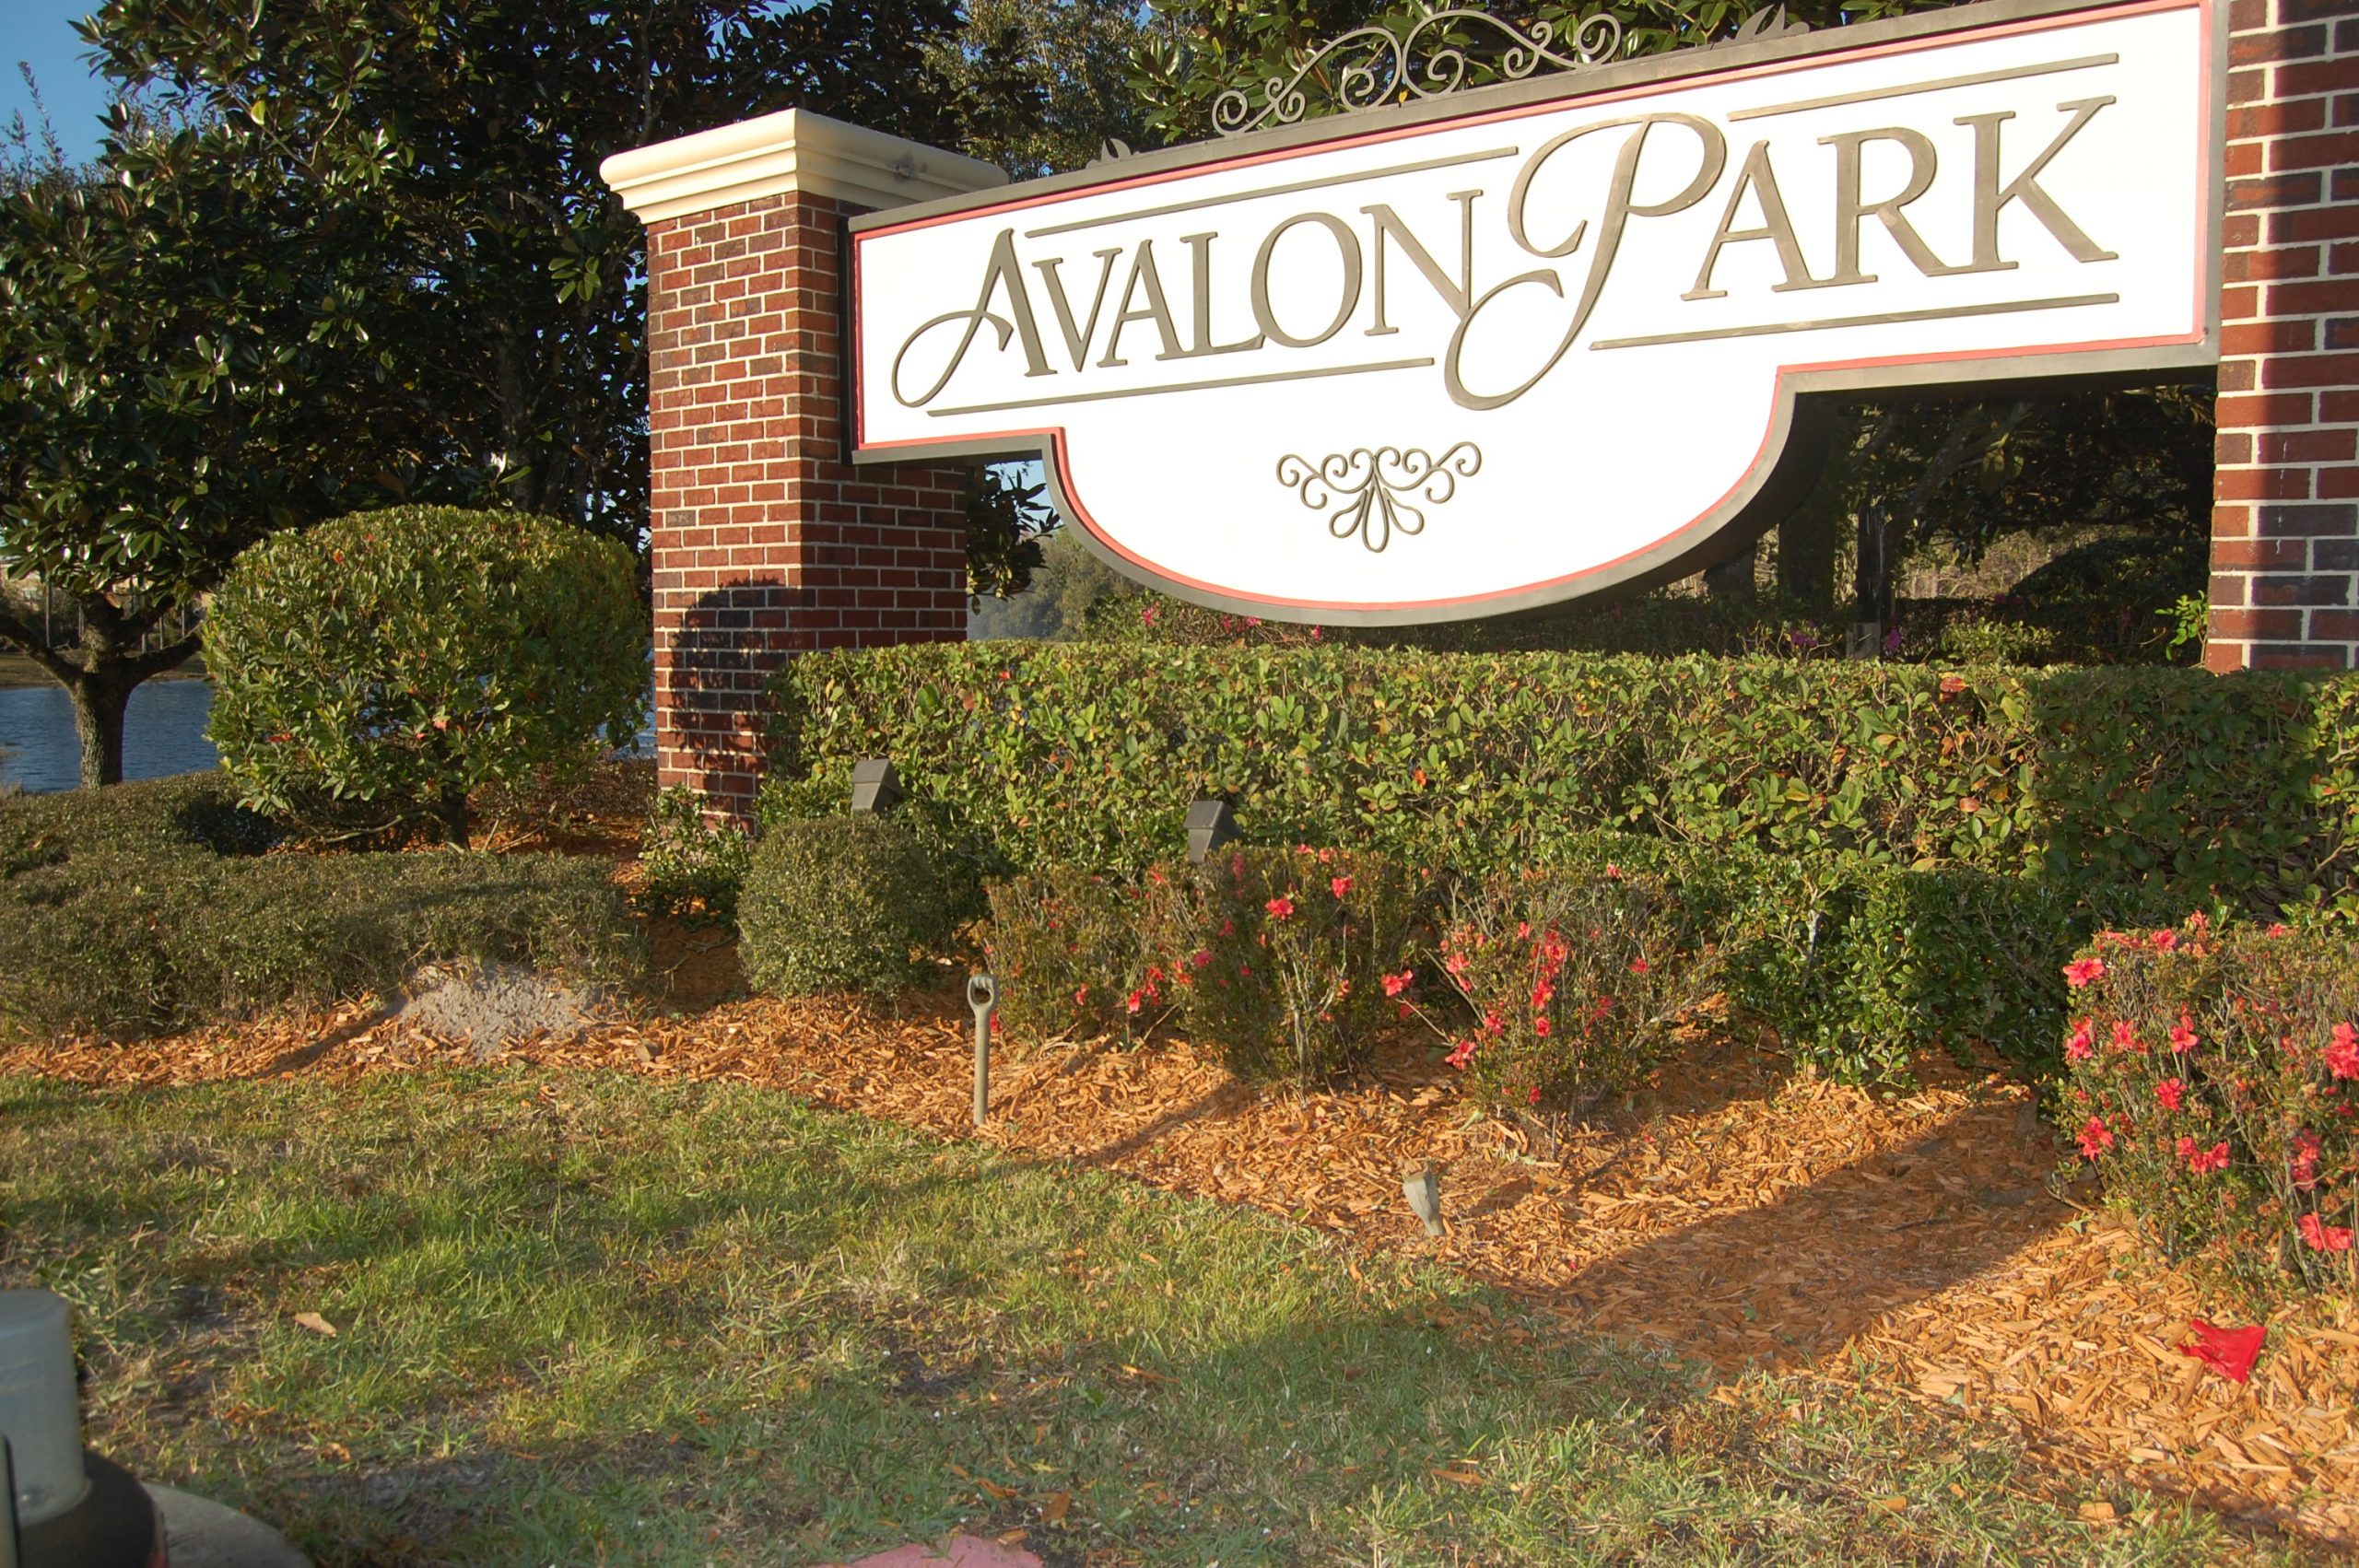 Avalon Park, Florida